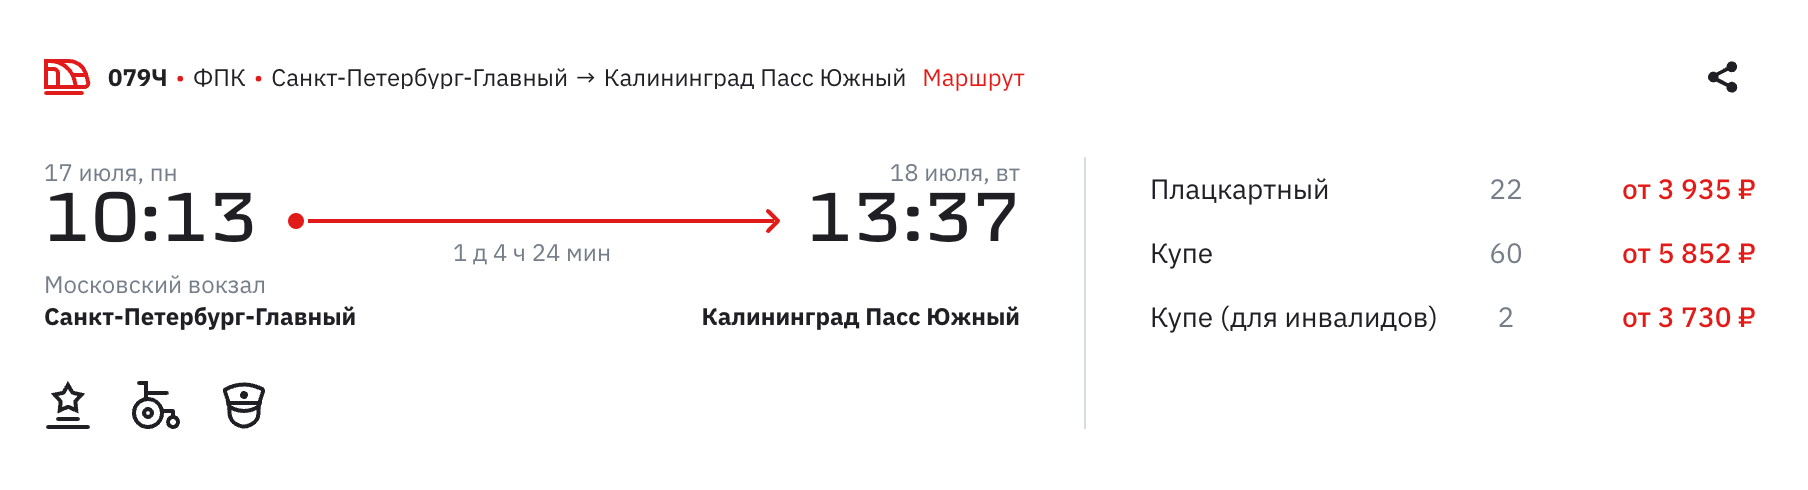 Из Петербурга в Калининград билеты стоят дешевле. Источник: ticket.rzd.ru